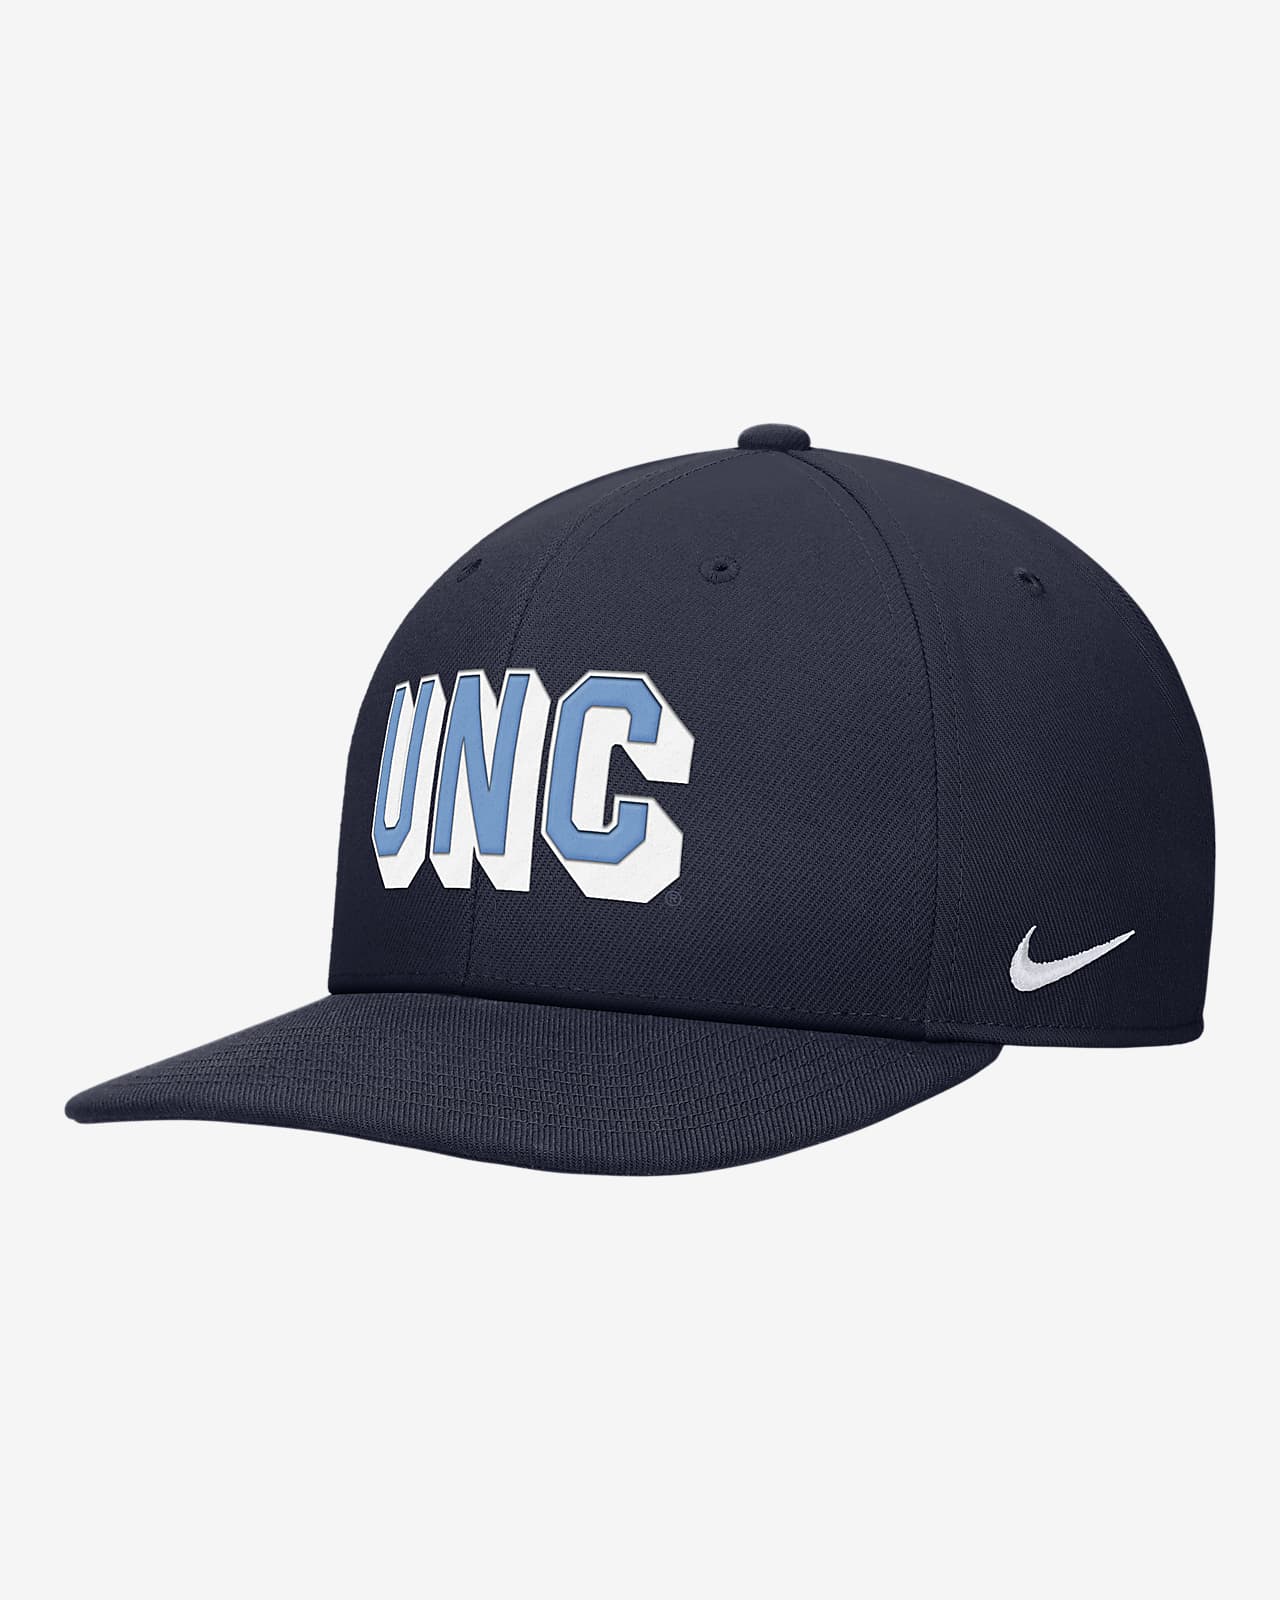 Gorra universitaria con cierre a presión Nike UNC